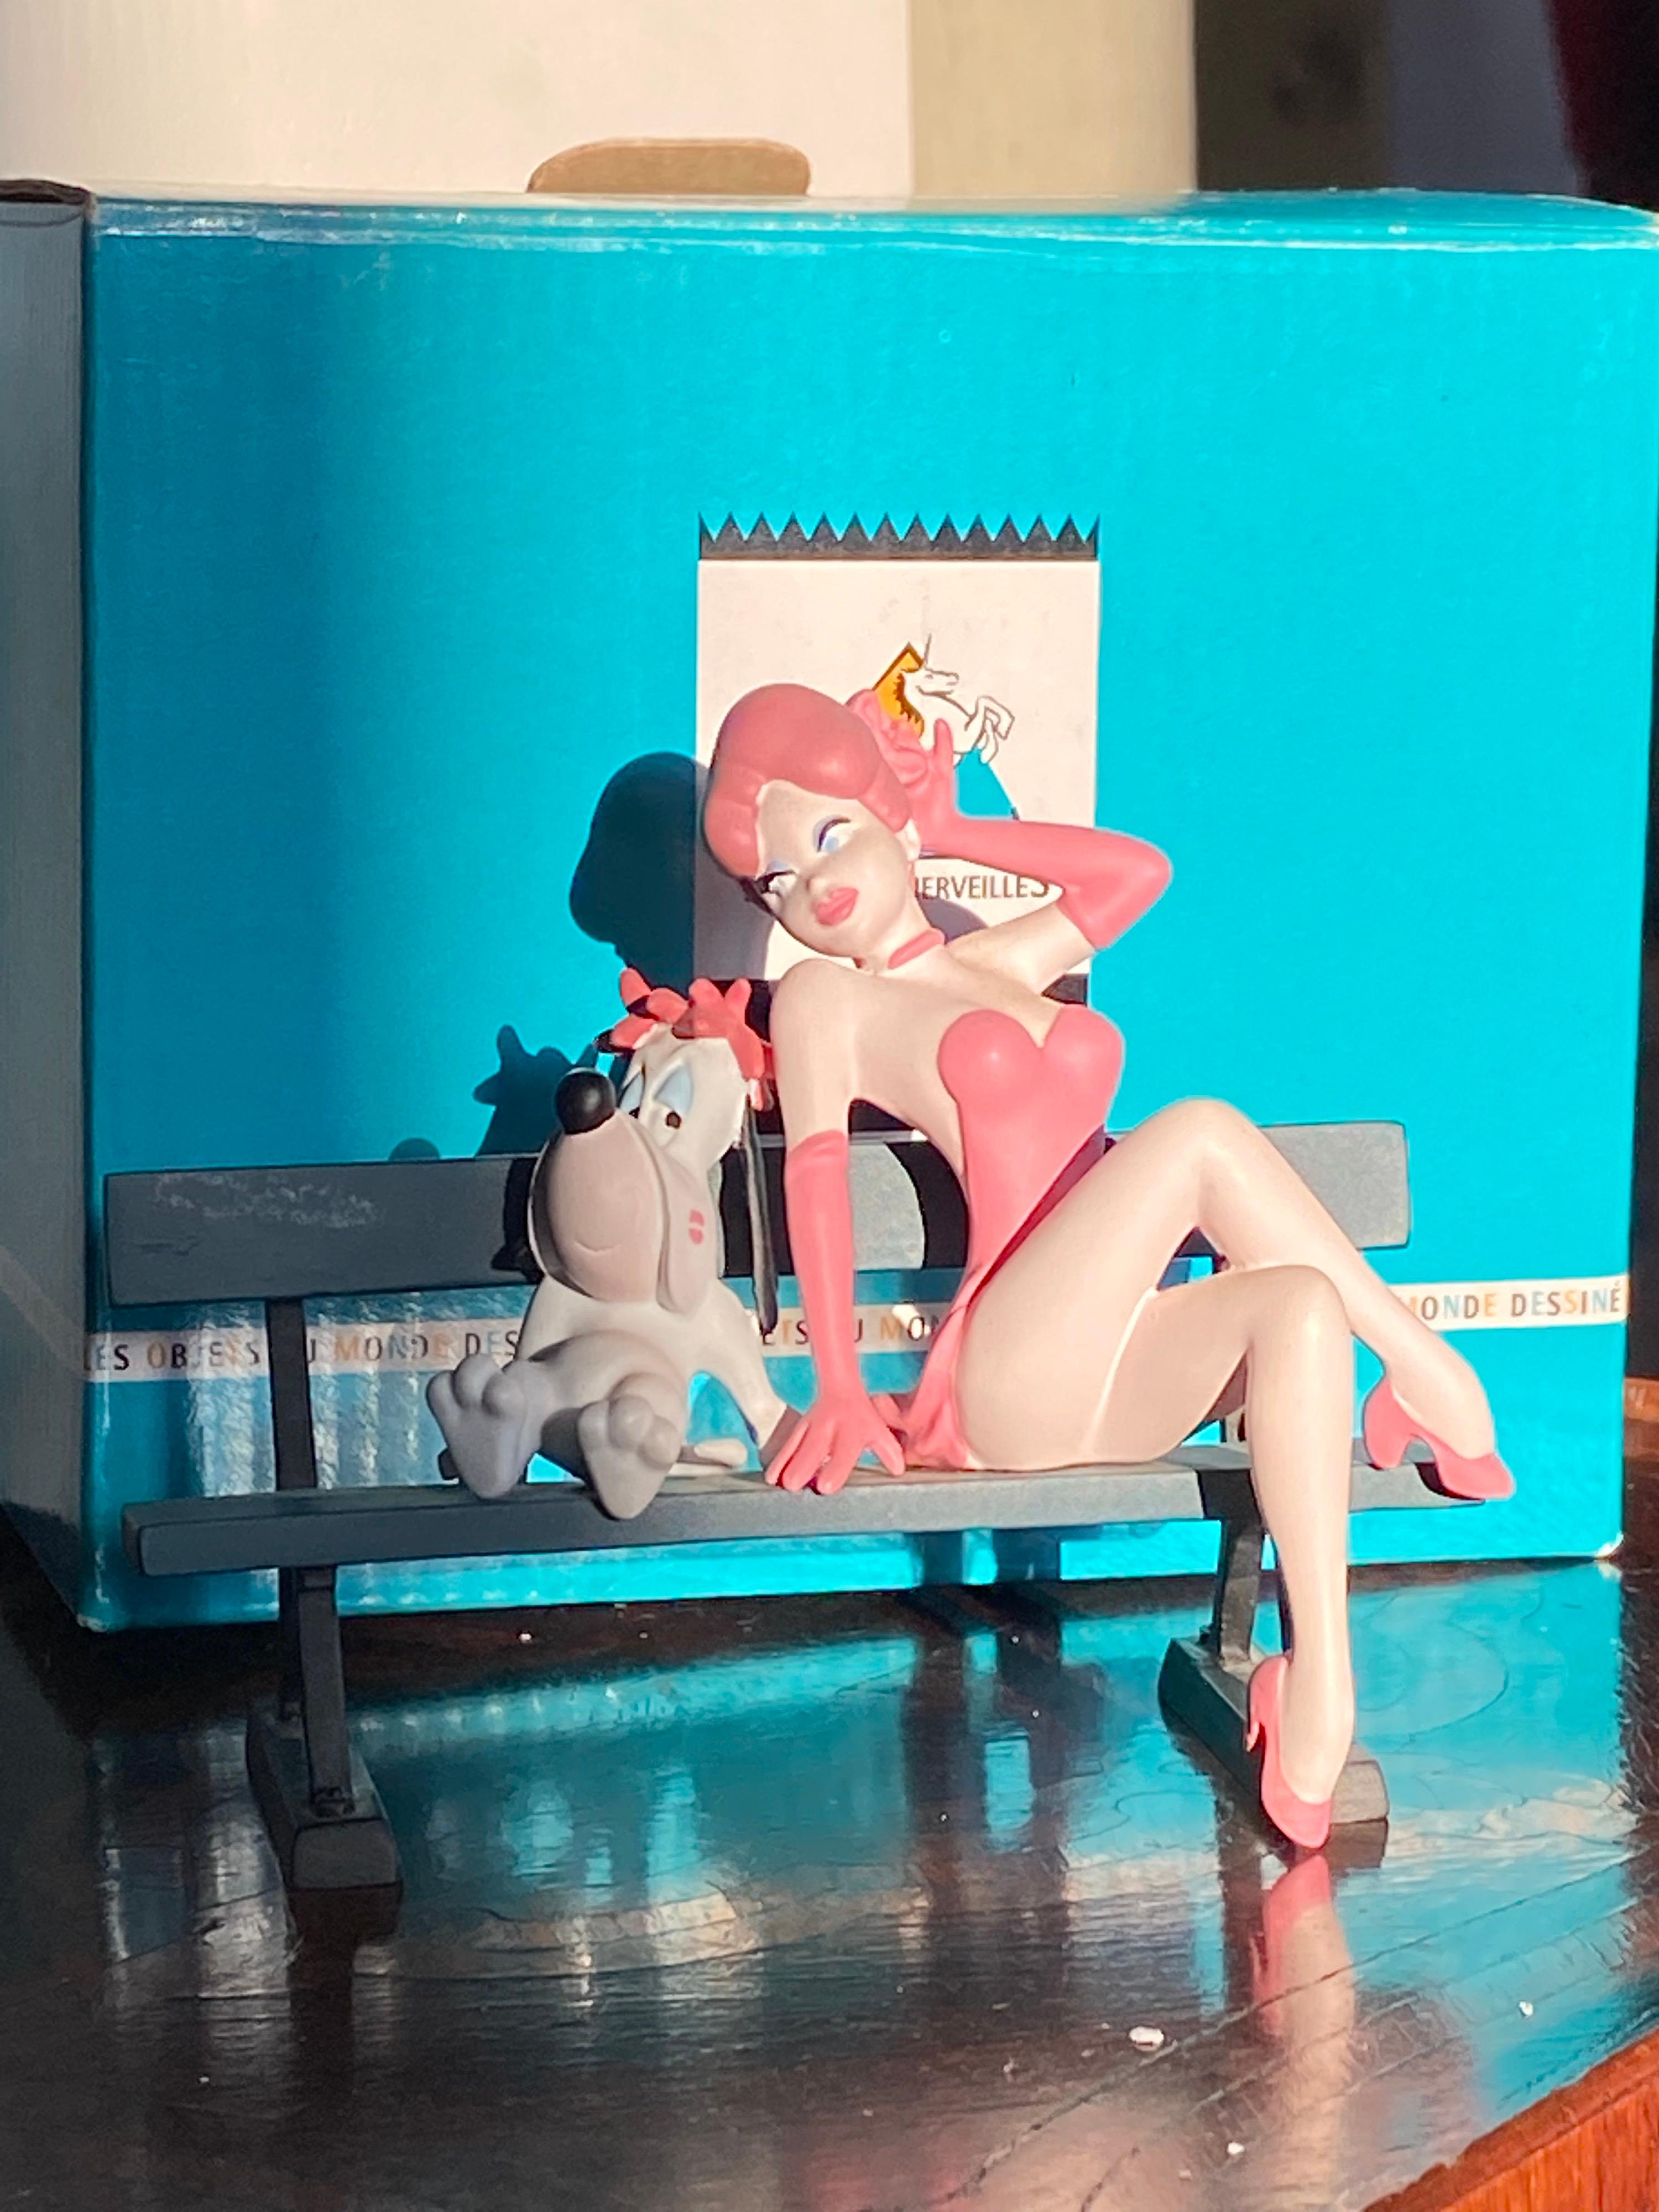 Figurine Statue von Droopy und das Mädchen sitzen auf einer Bank von Demons & Merveilles.
Made in 2001 in der Originalverpackung in einwandfreiem Zustand.
Perfektes Geschenk und Teil einer großen Sammlung.
USA, 2001.